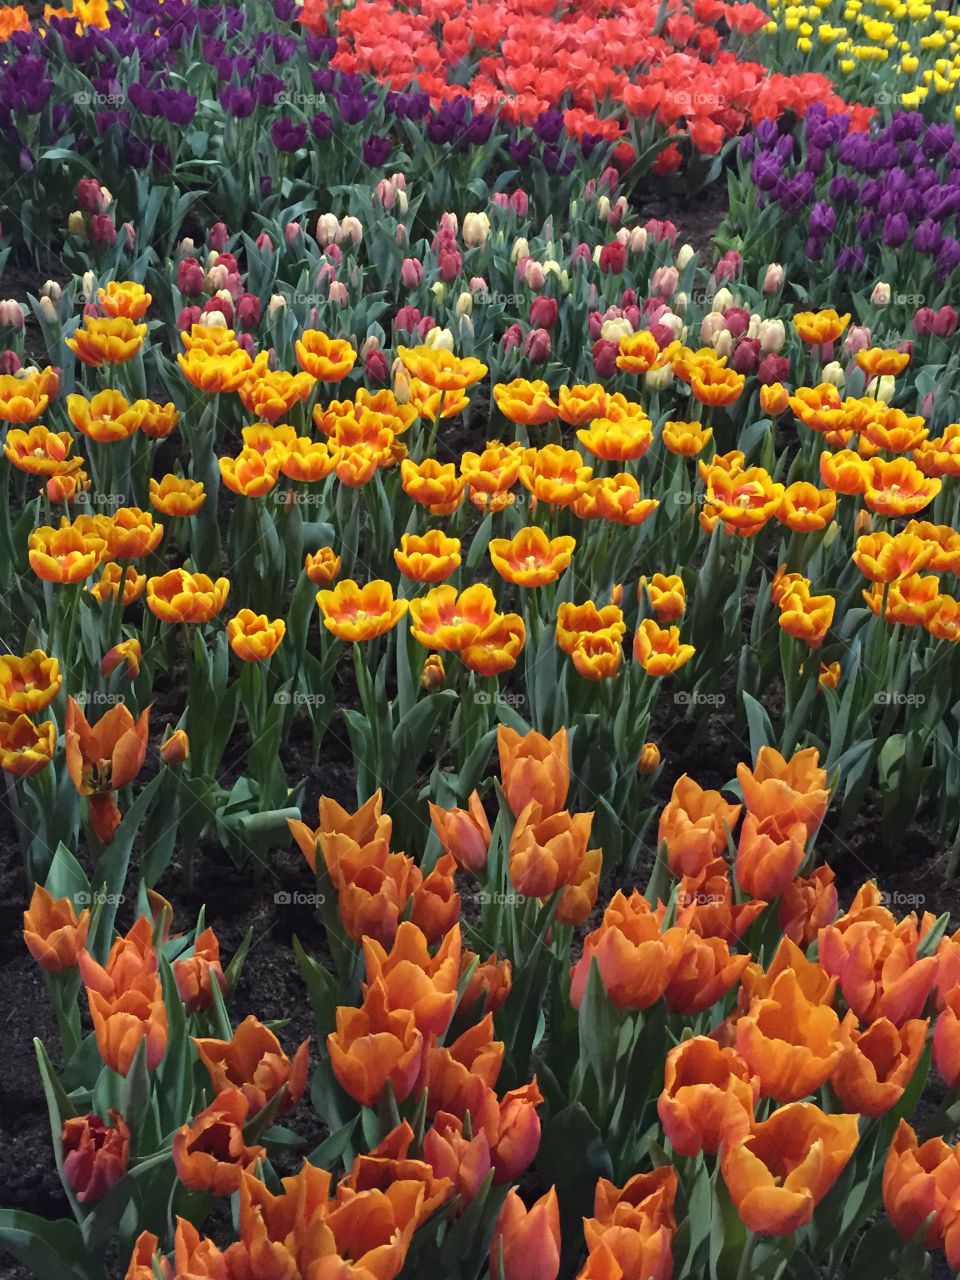 Field of tulips 